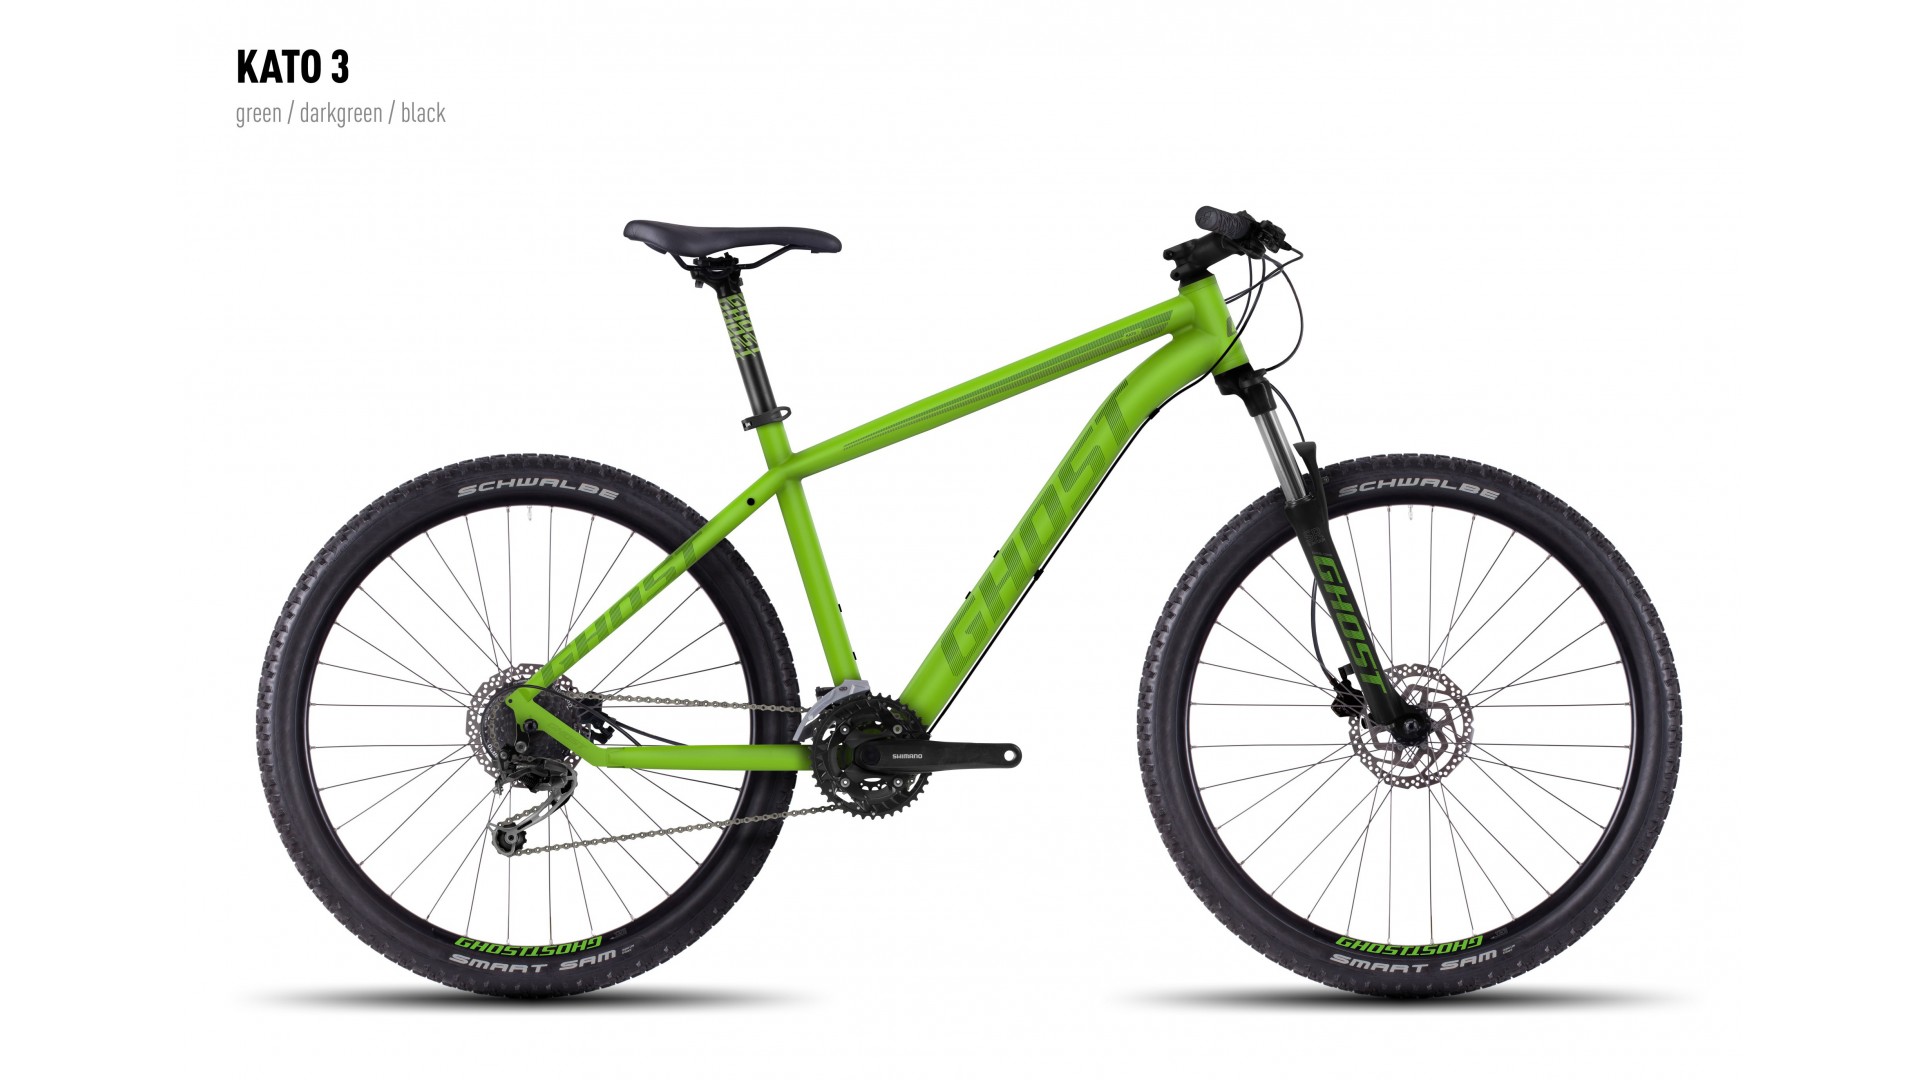 Велосипед GHOST Kato 3 green/darkgreen/black 1 год 2016